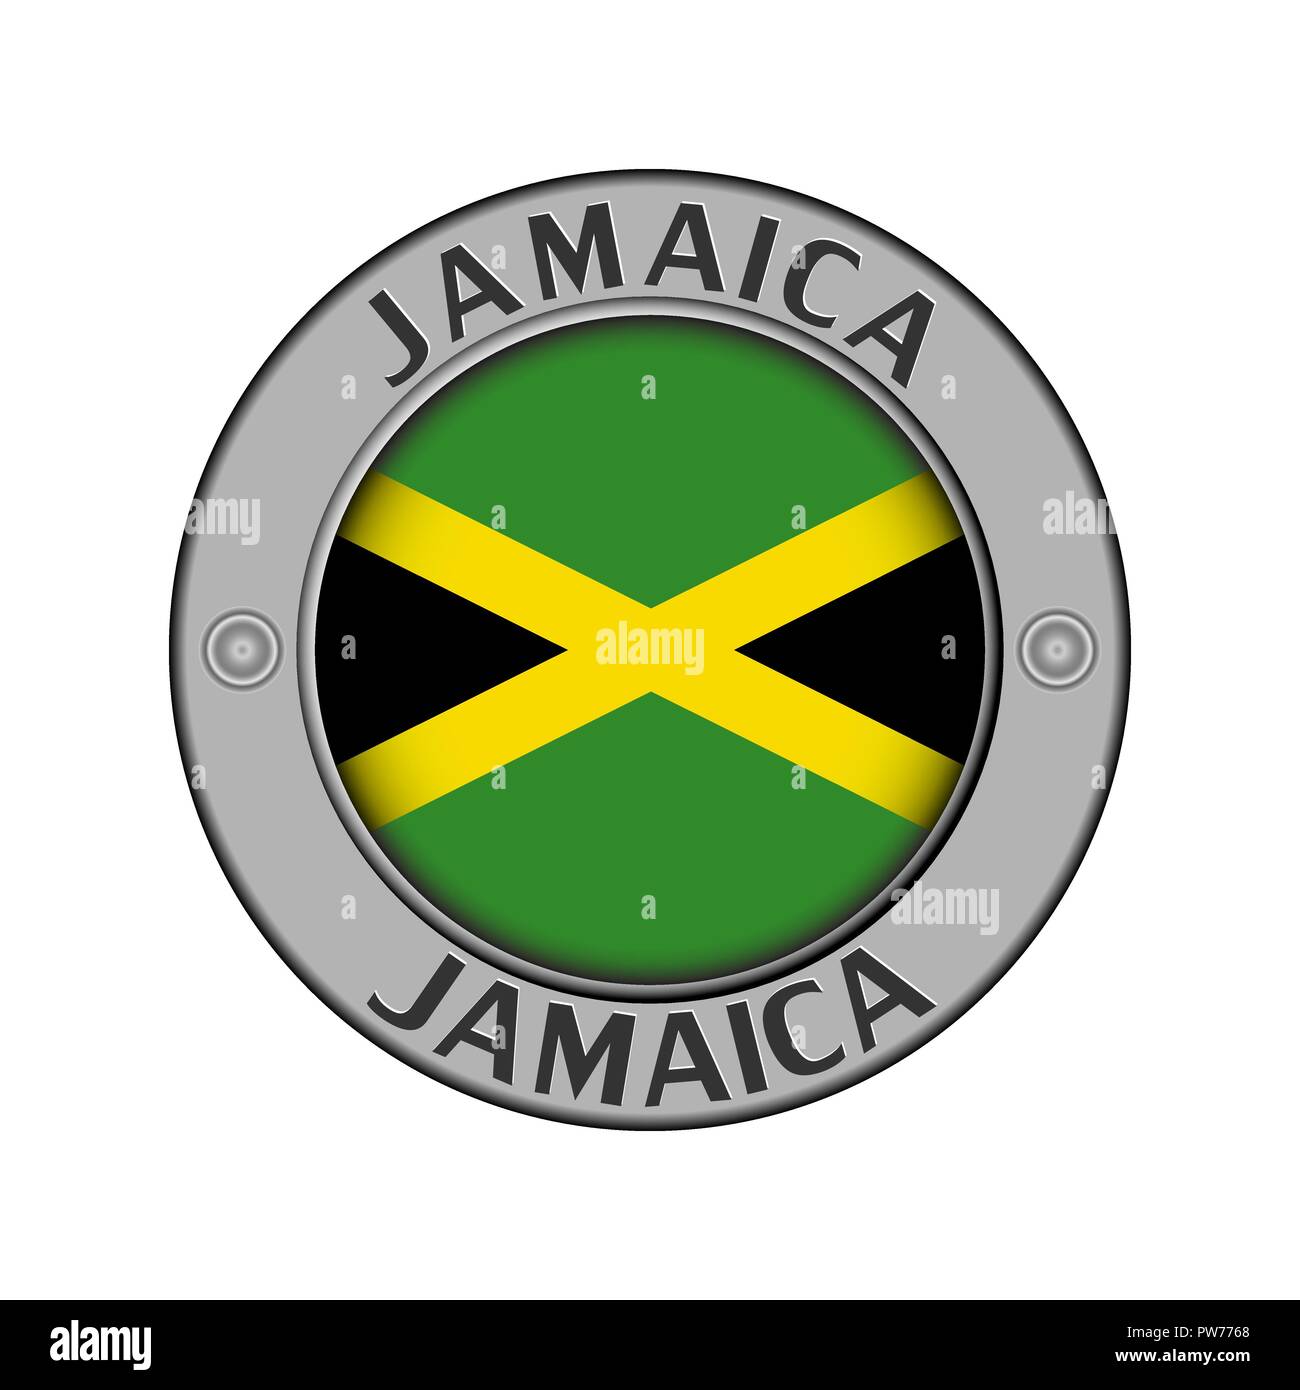 Rotondo di metallo medaglione con il nome del paese Giamaica e un indicatore rotondo nel centro Illustrazione Vettoriale